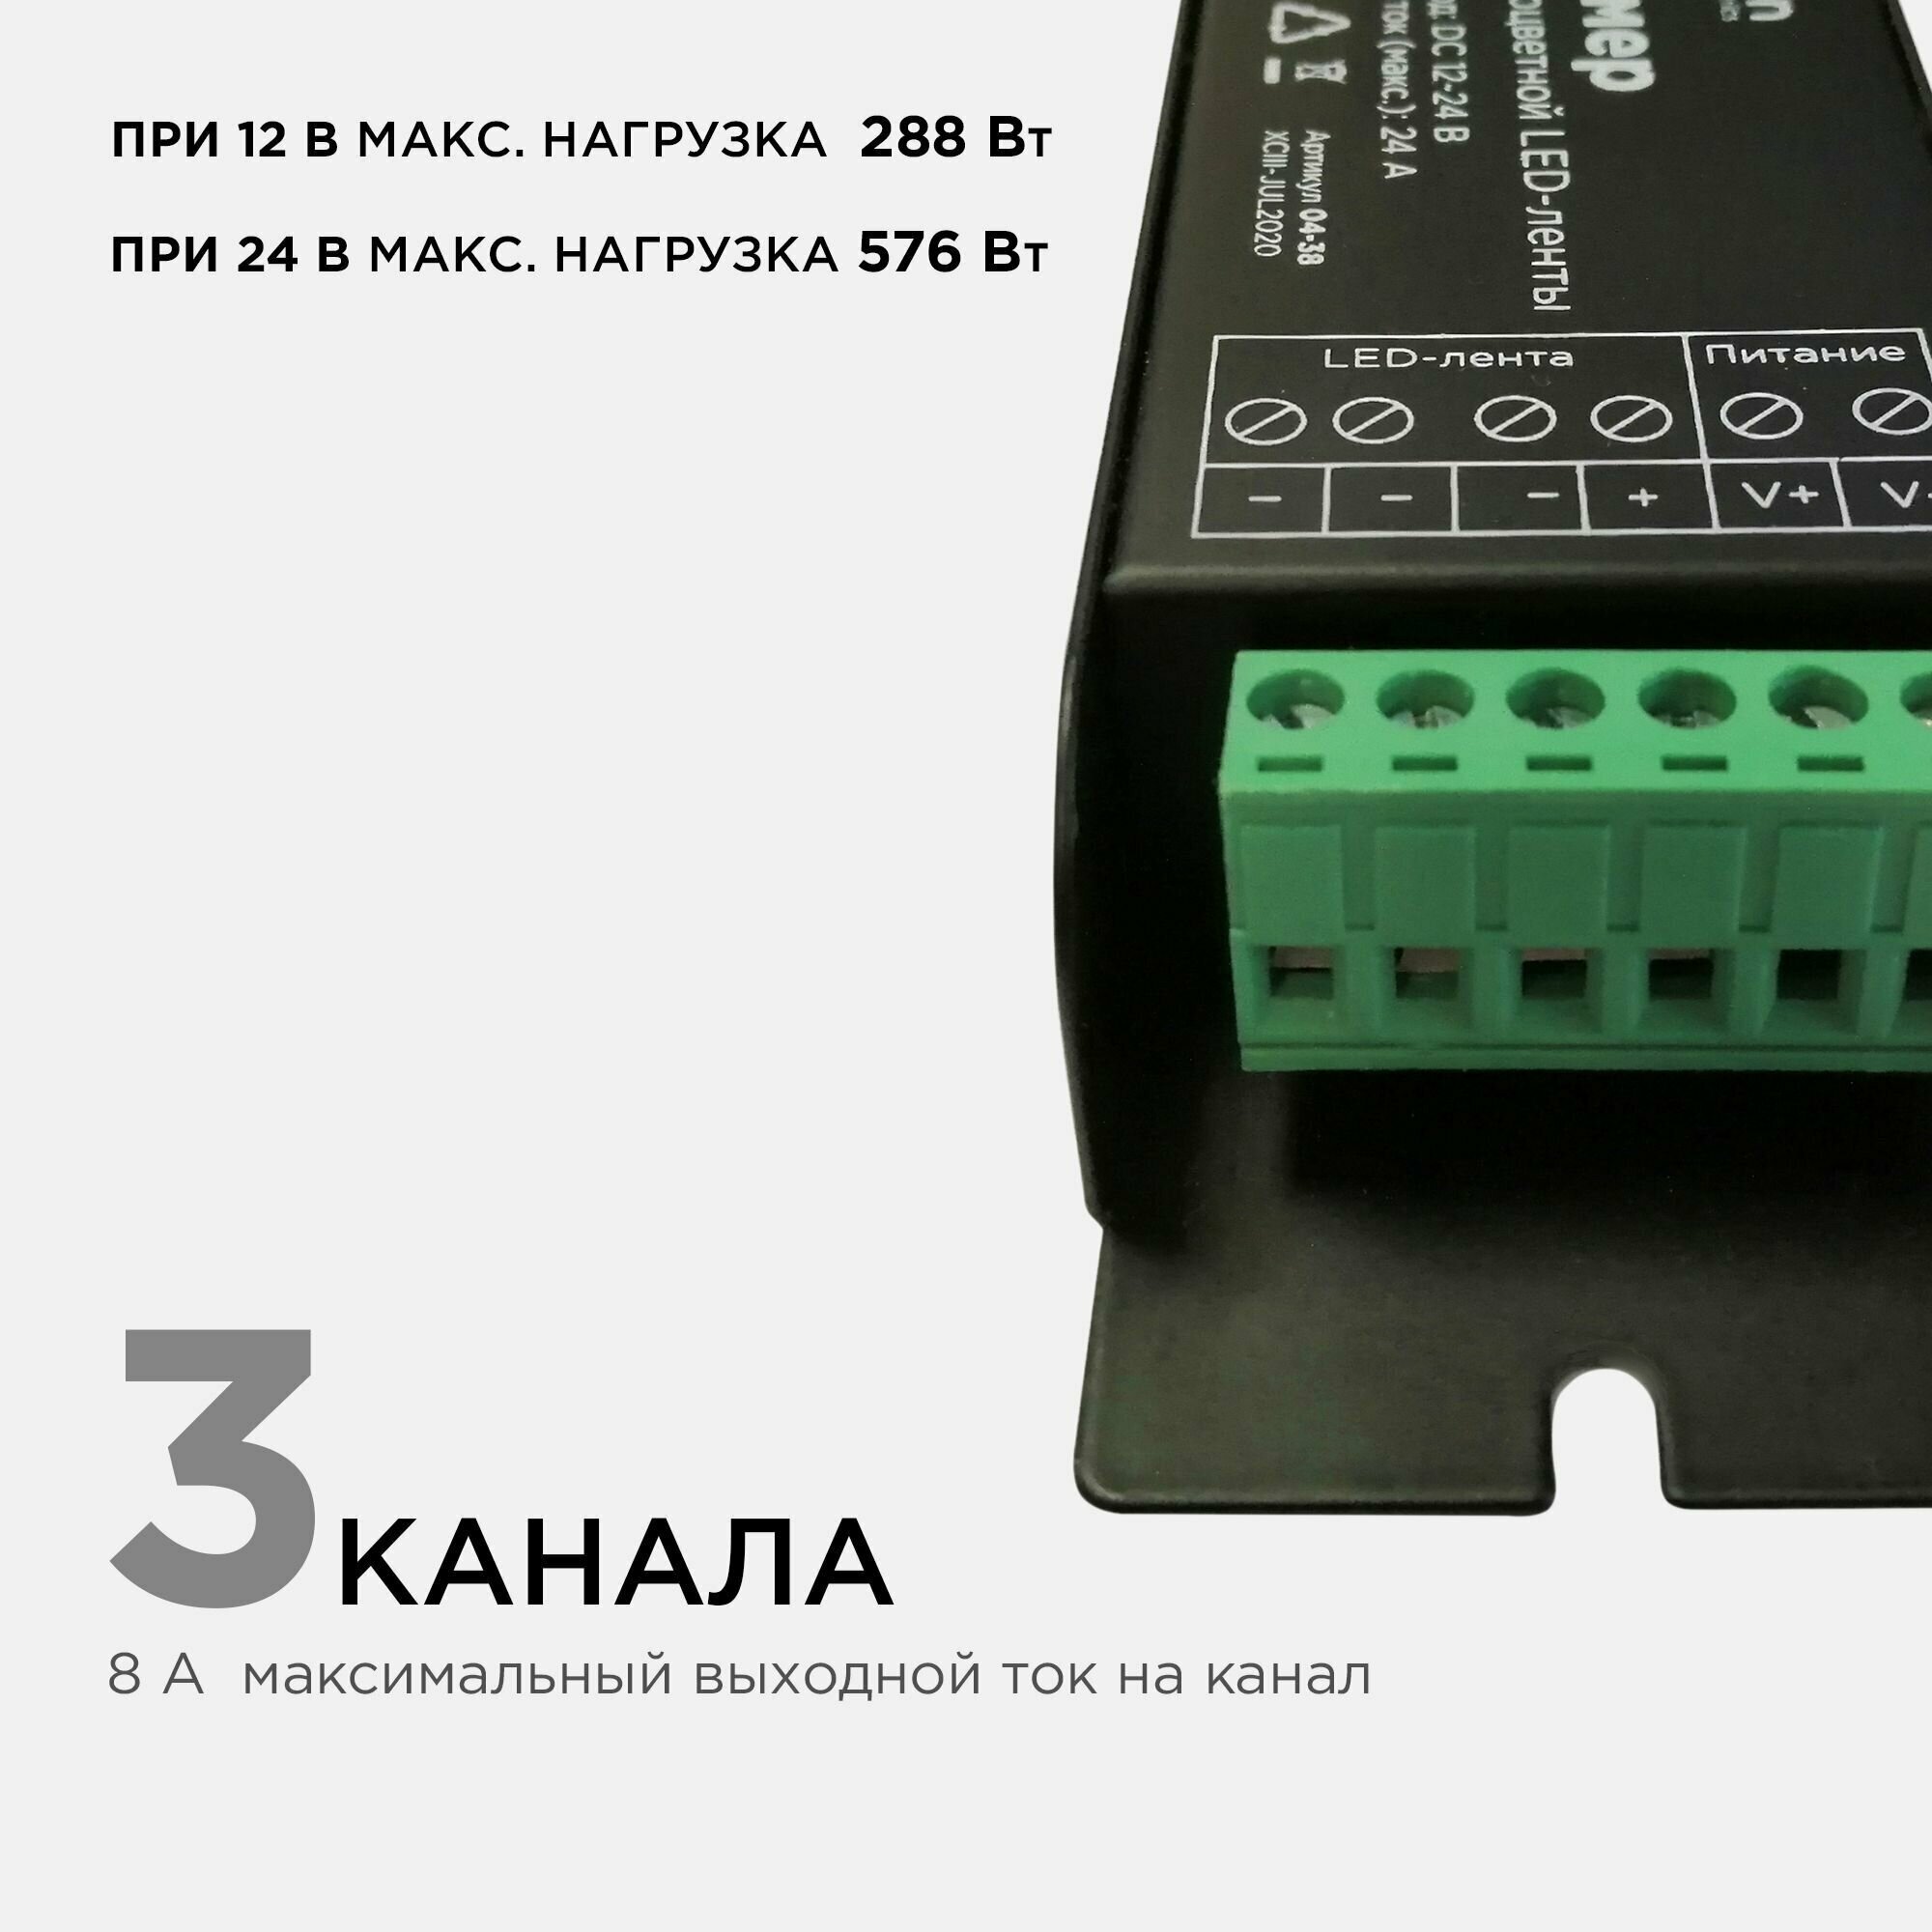 Диммер управления монохромными светодиодными лентами с беспроводным пультом ДУ easy control / 12В-288 Вт, 24В-576 Вт, IP20, 3 канала-8А, 117х42х24 мм